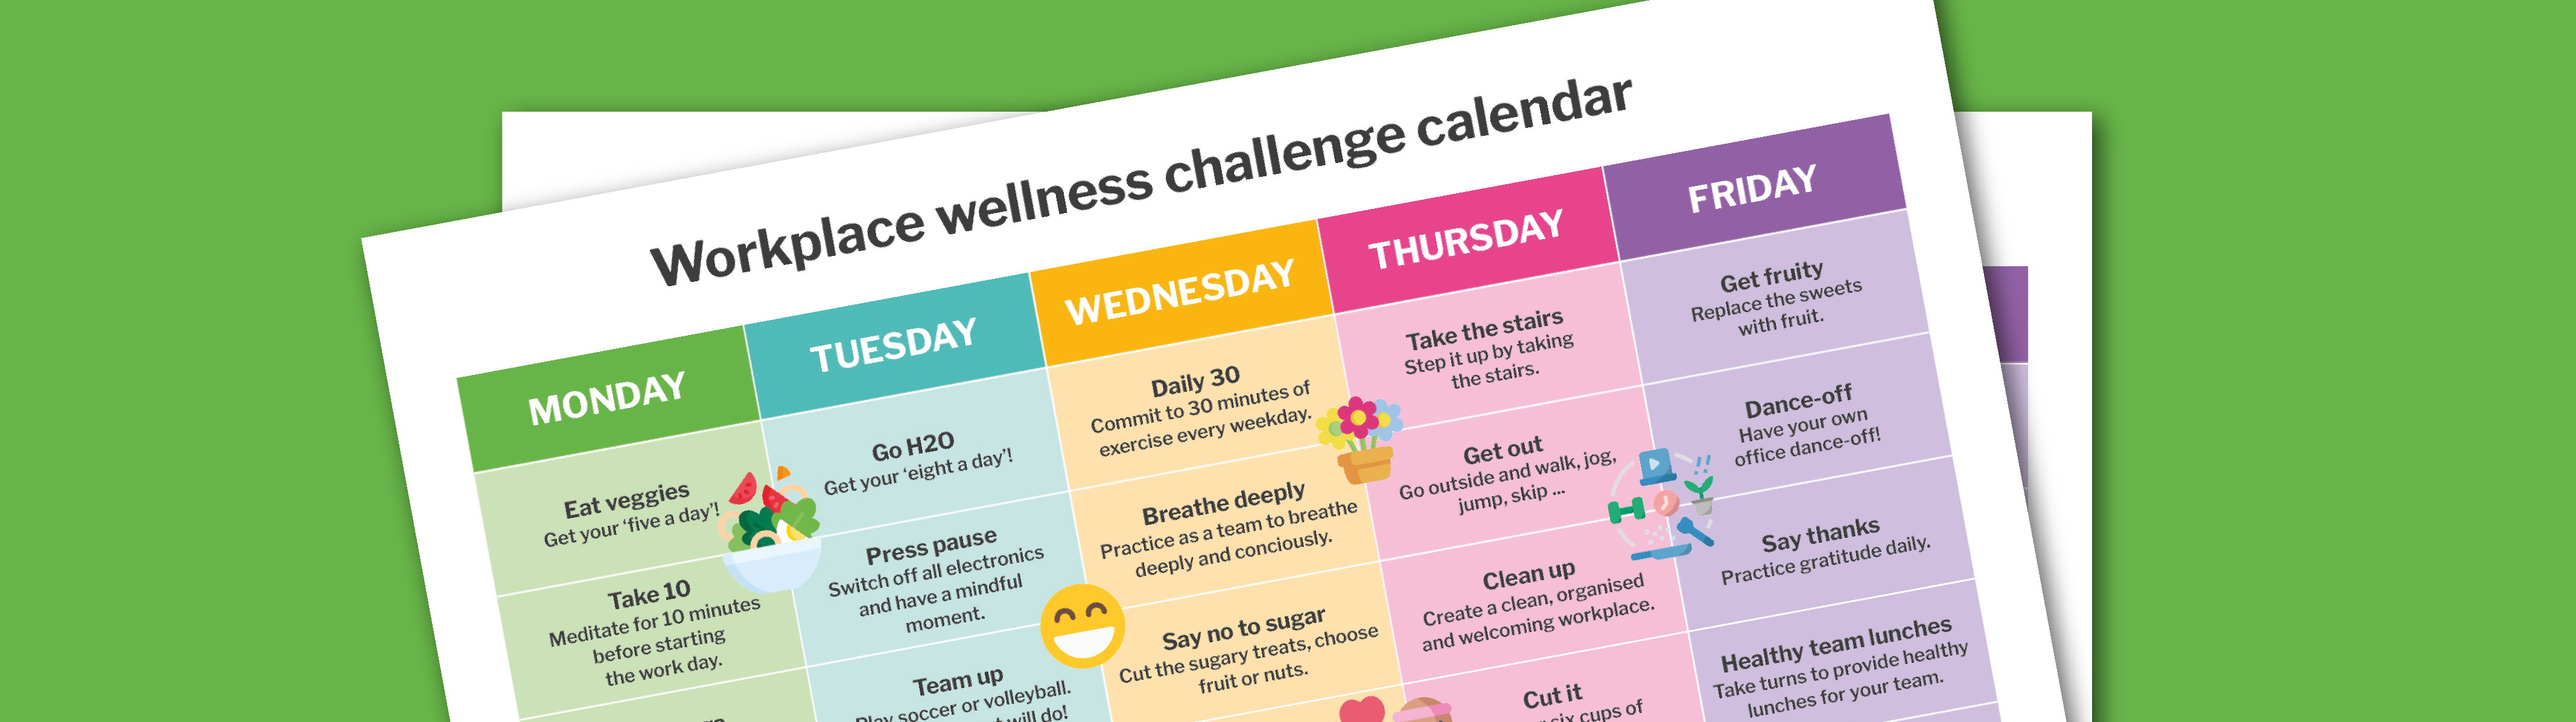 Wellness_calendar_W.jpg